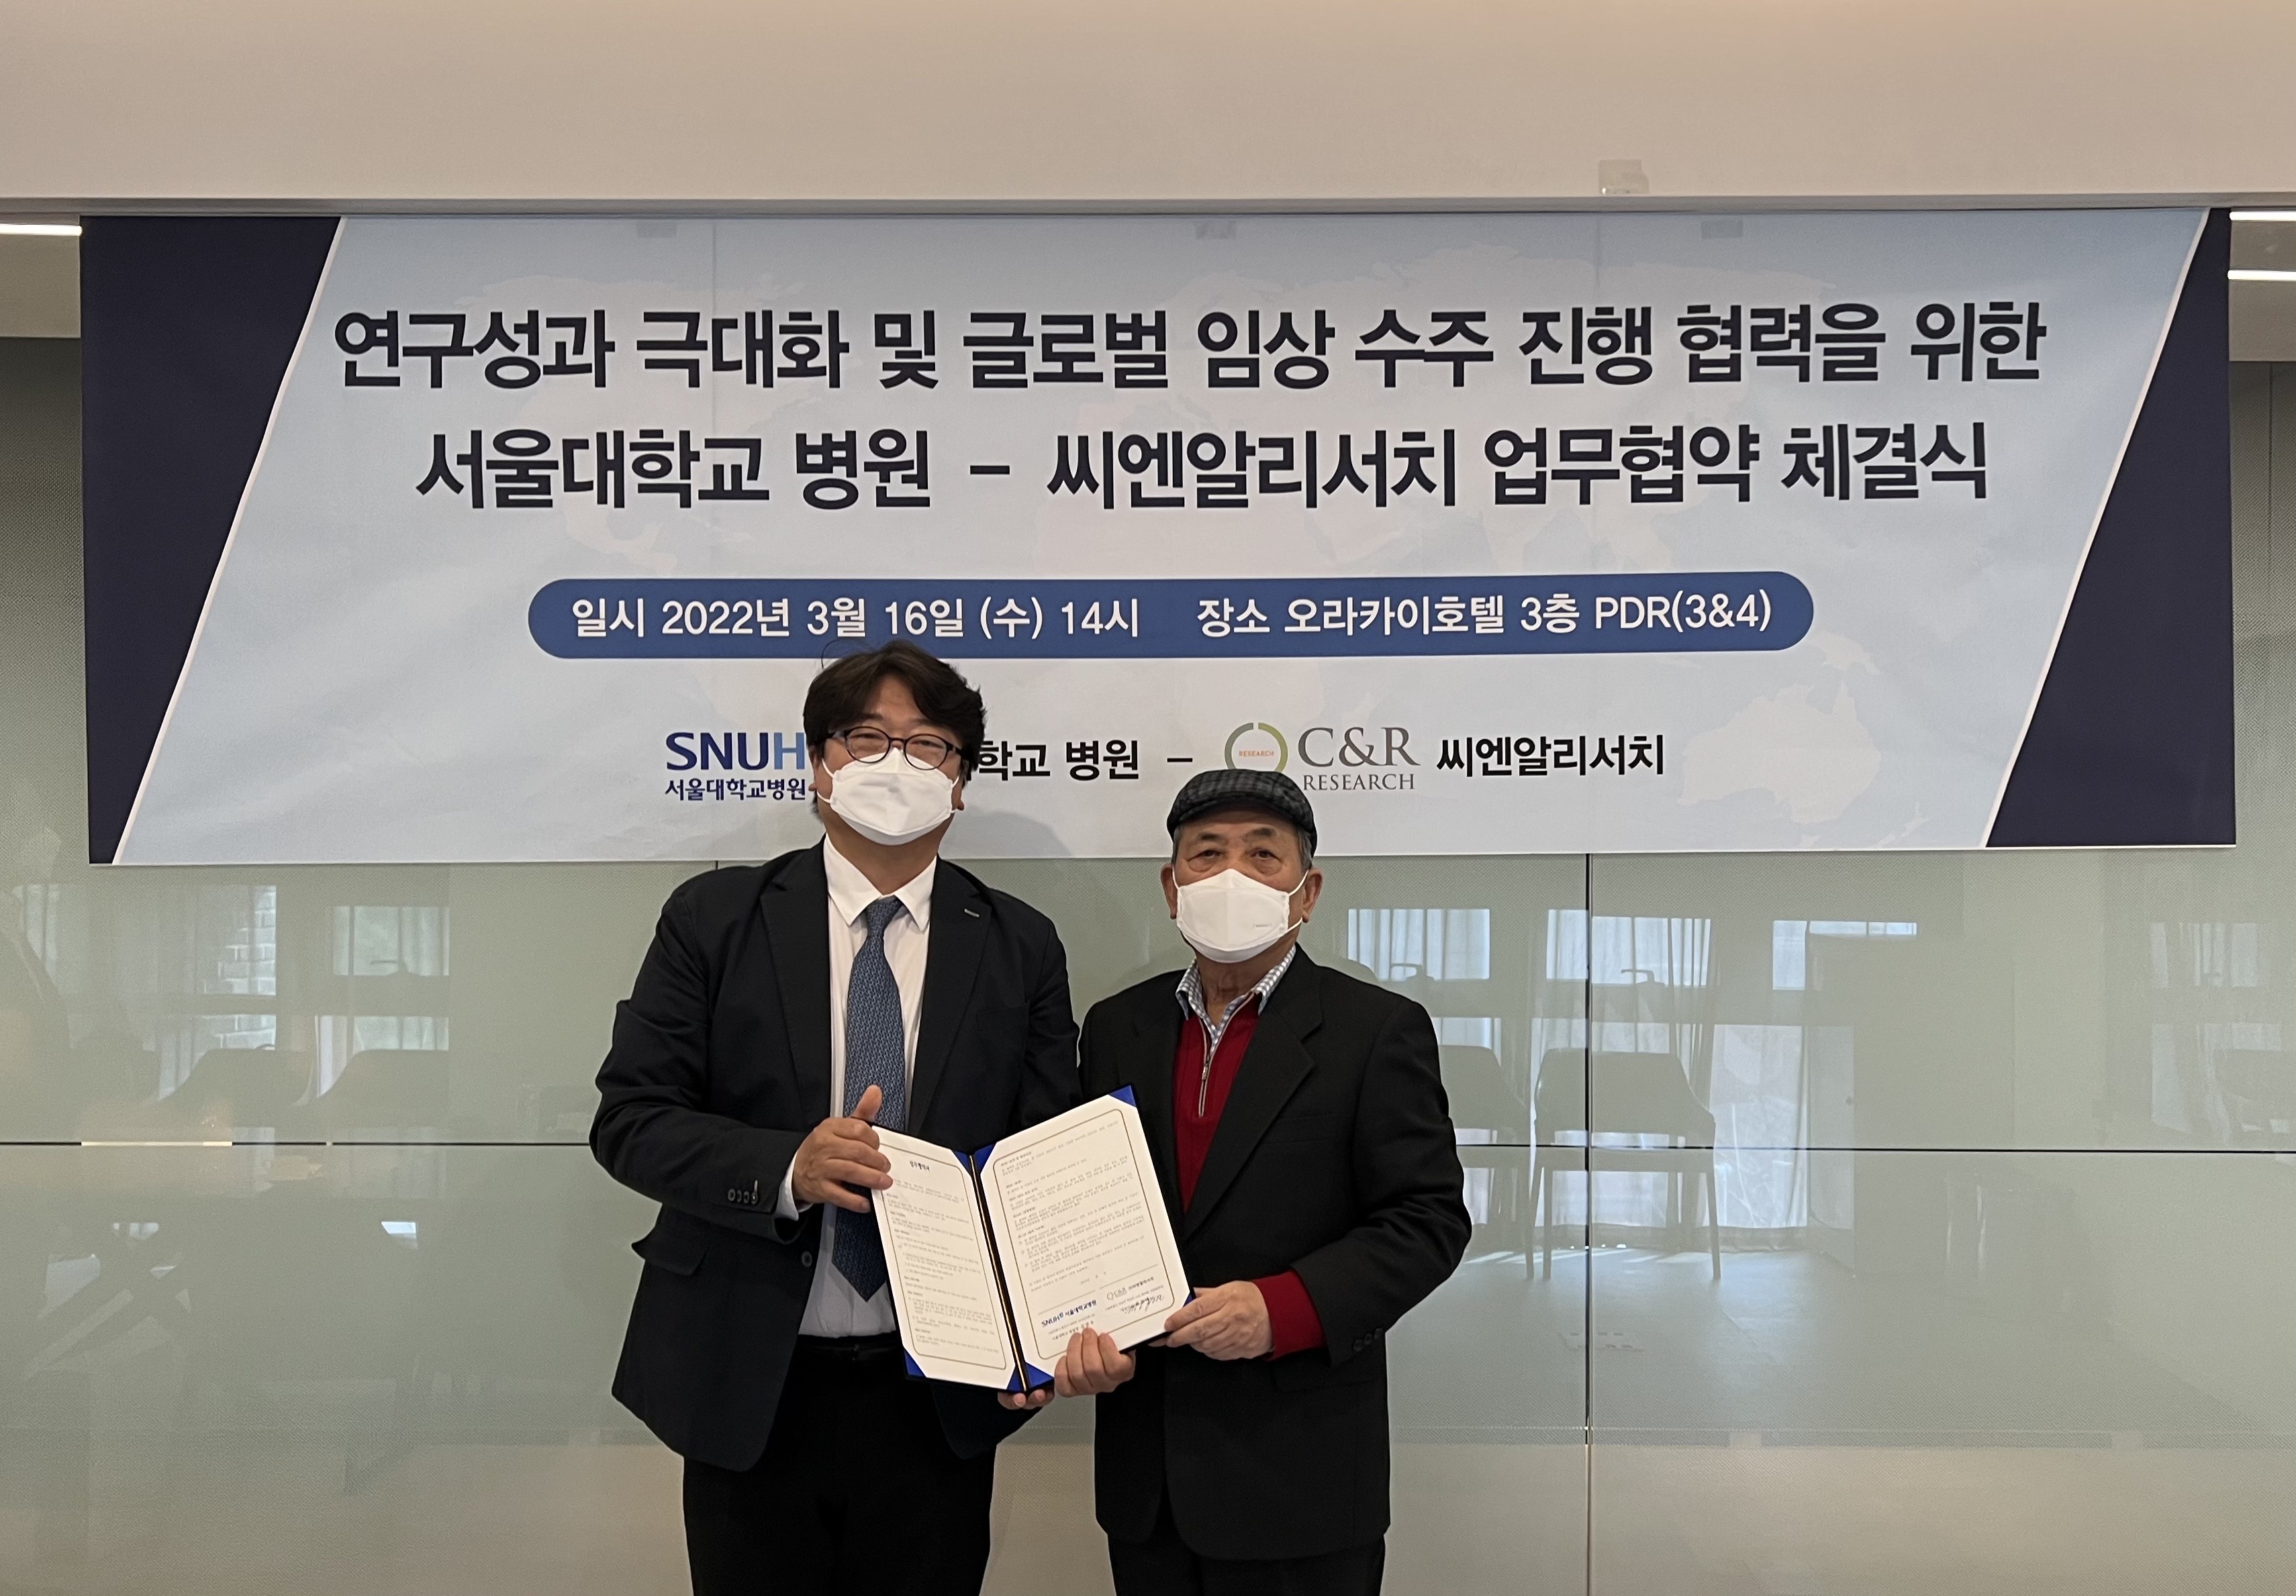 [연합뉴스] 씨엔알리서치, 서울대병원과 다국가 임상 공동 수행 협력